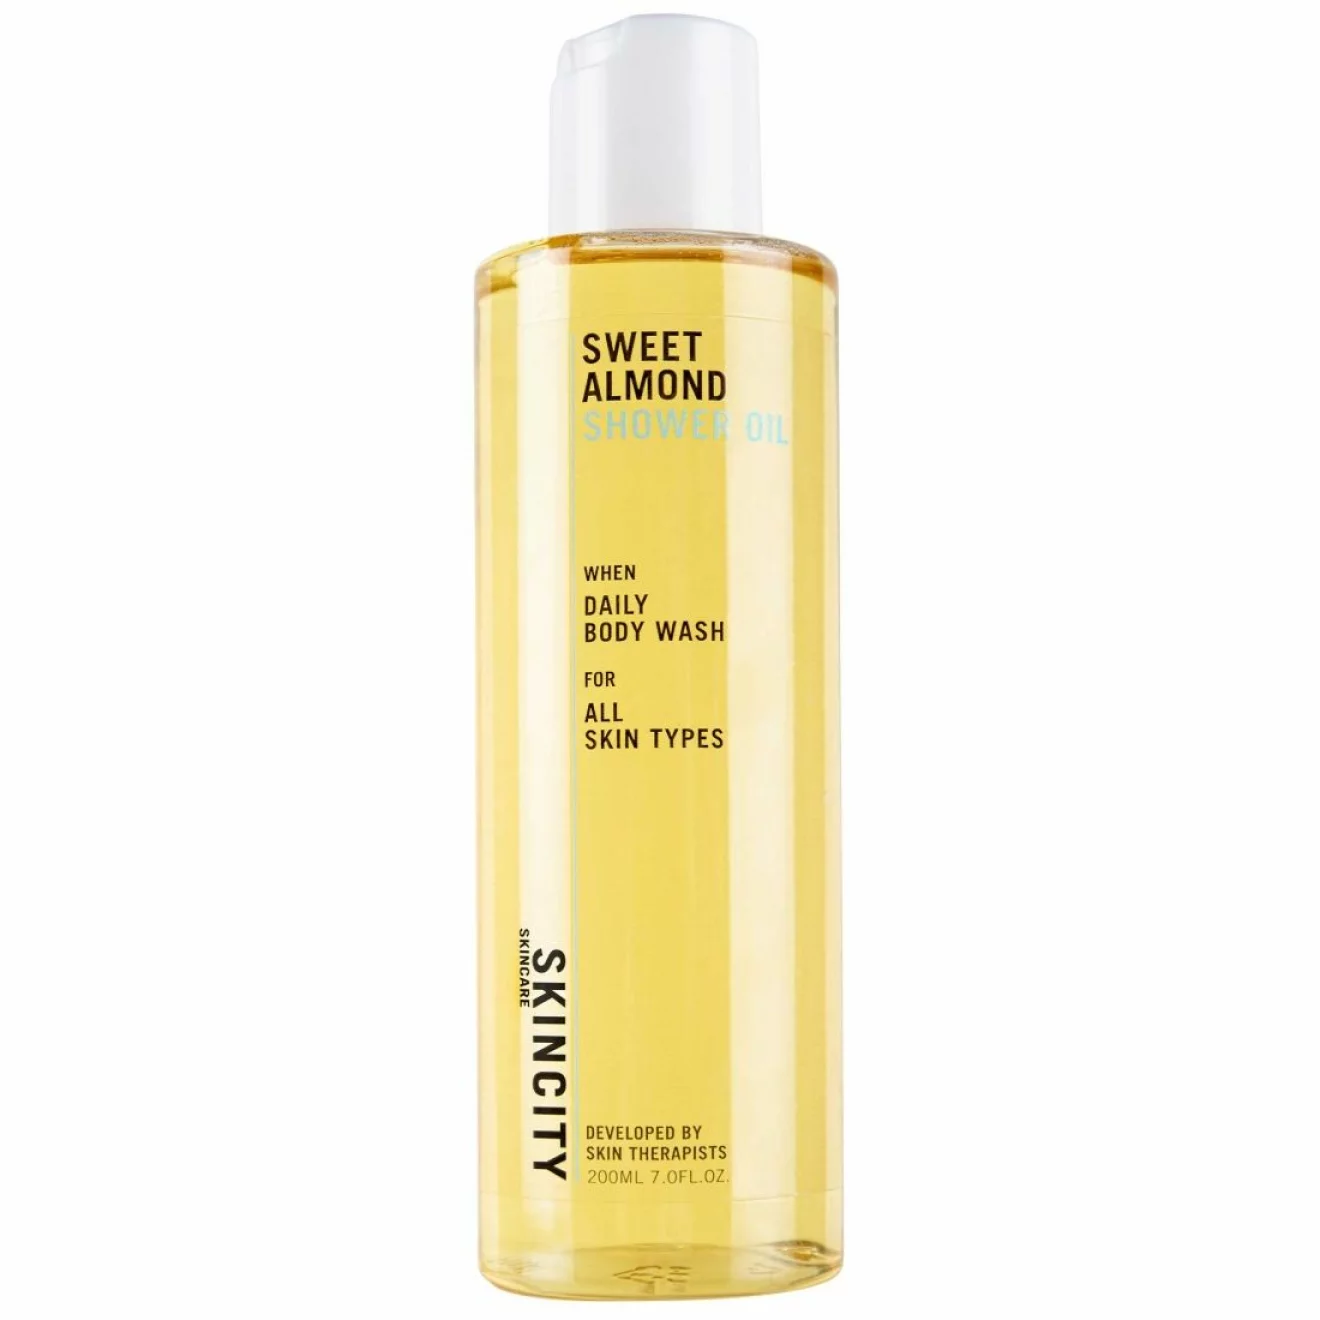 Duscholjan Sweet almond shower oil från Skincity håller hela kroppen återfuktad.